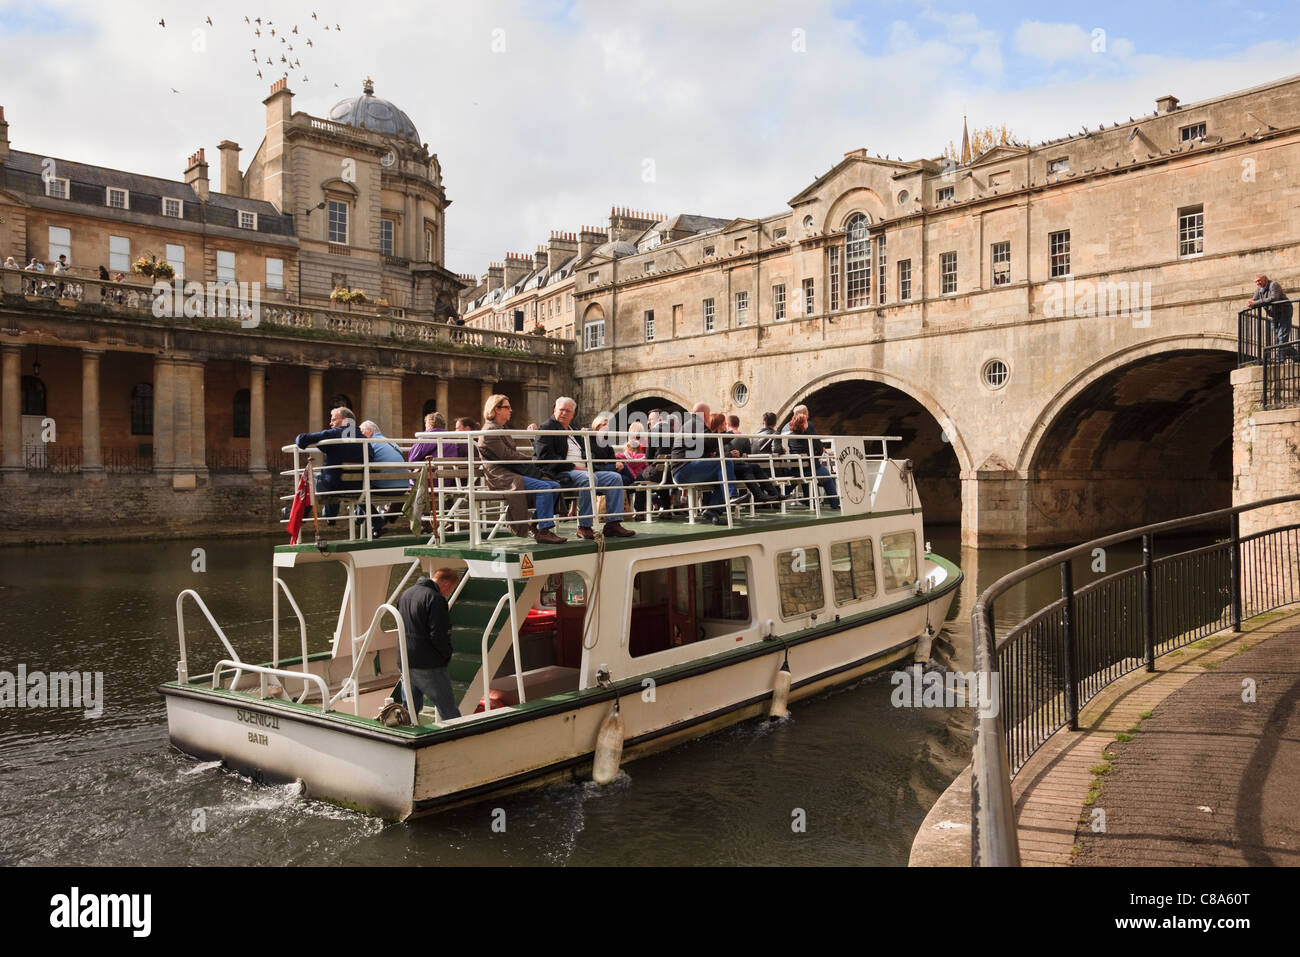 Les touristes sur une croisière en bateau sur la rivière Avon par Pont Pulteney Bath, Somerset, Angleterre, Royaume-Uni Grande-Bretagne Banque D'Images